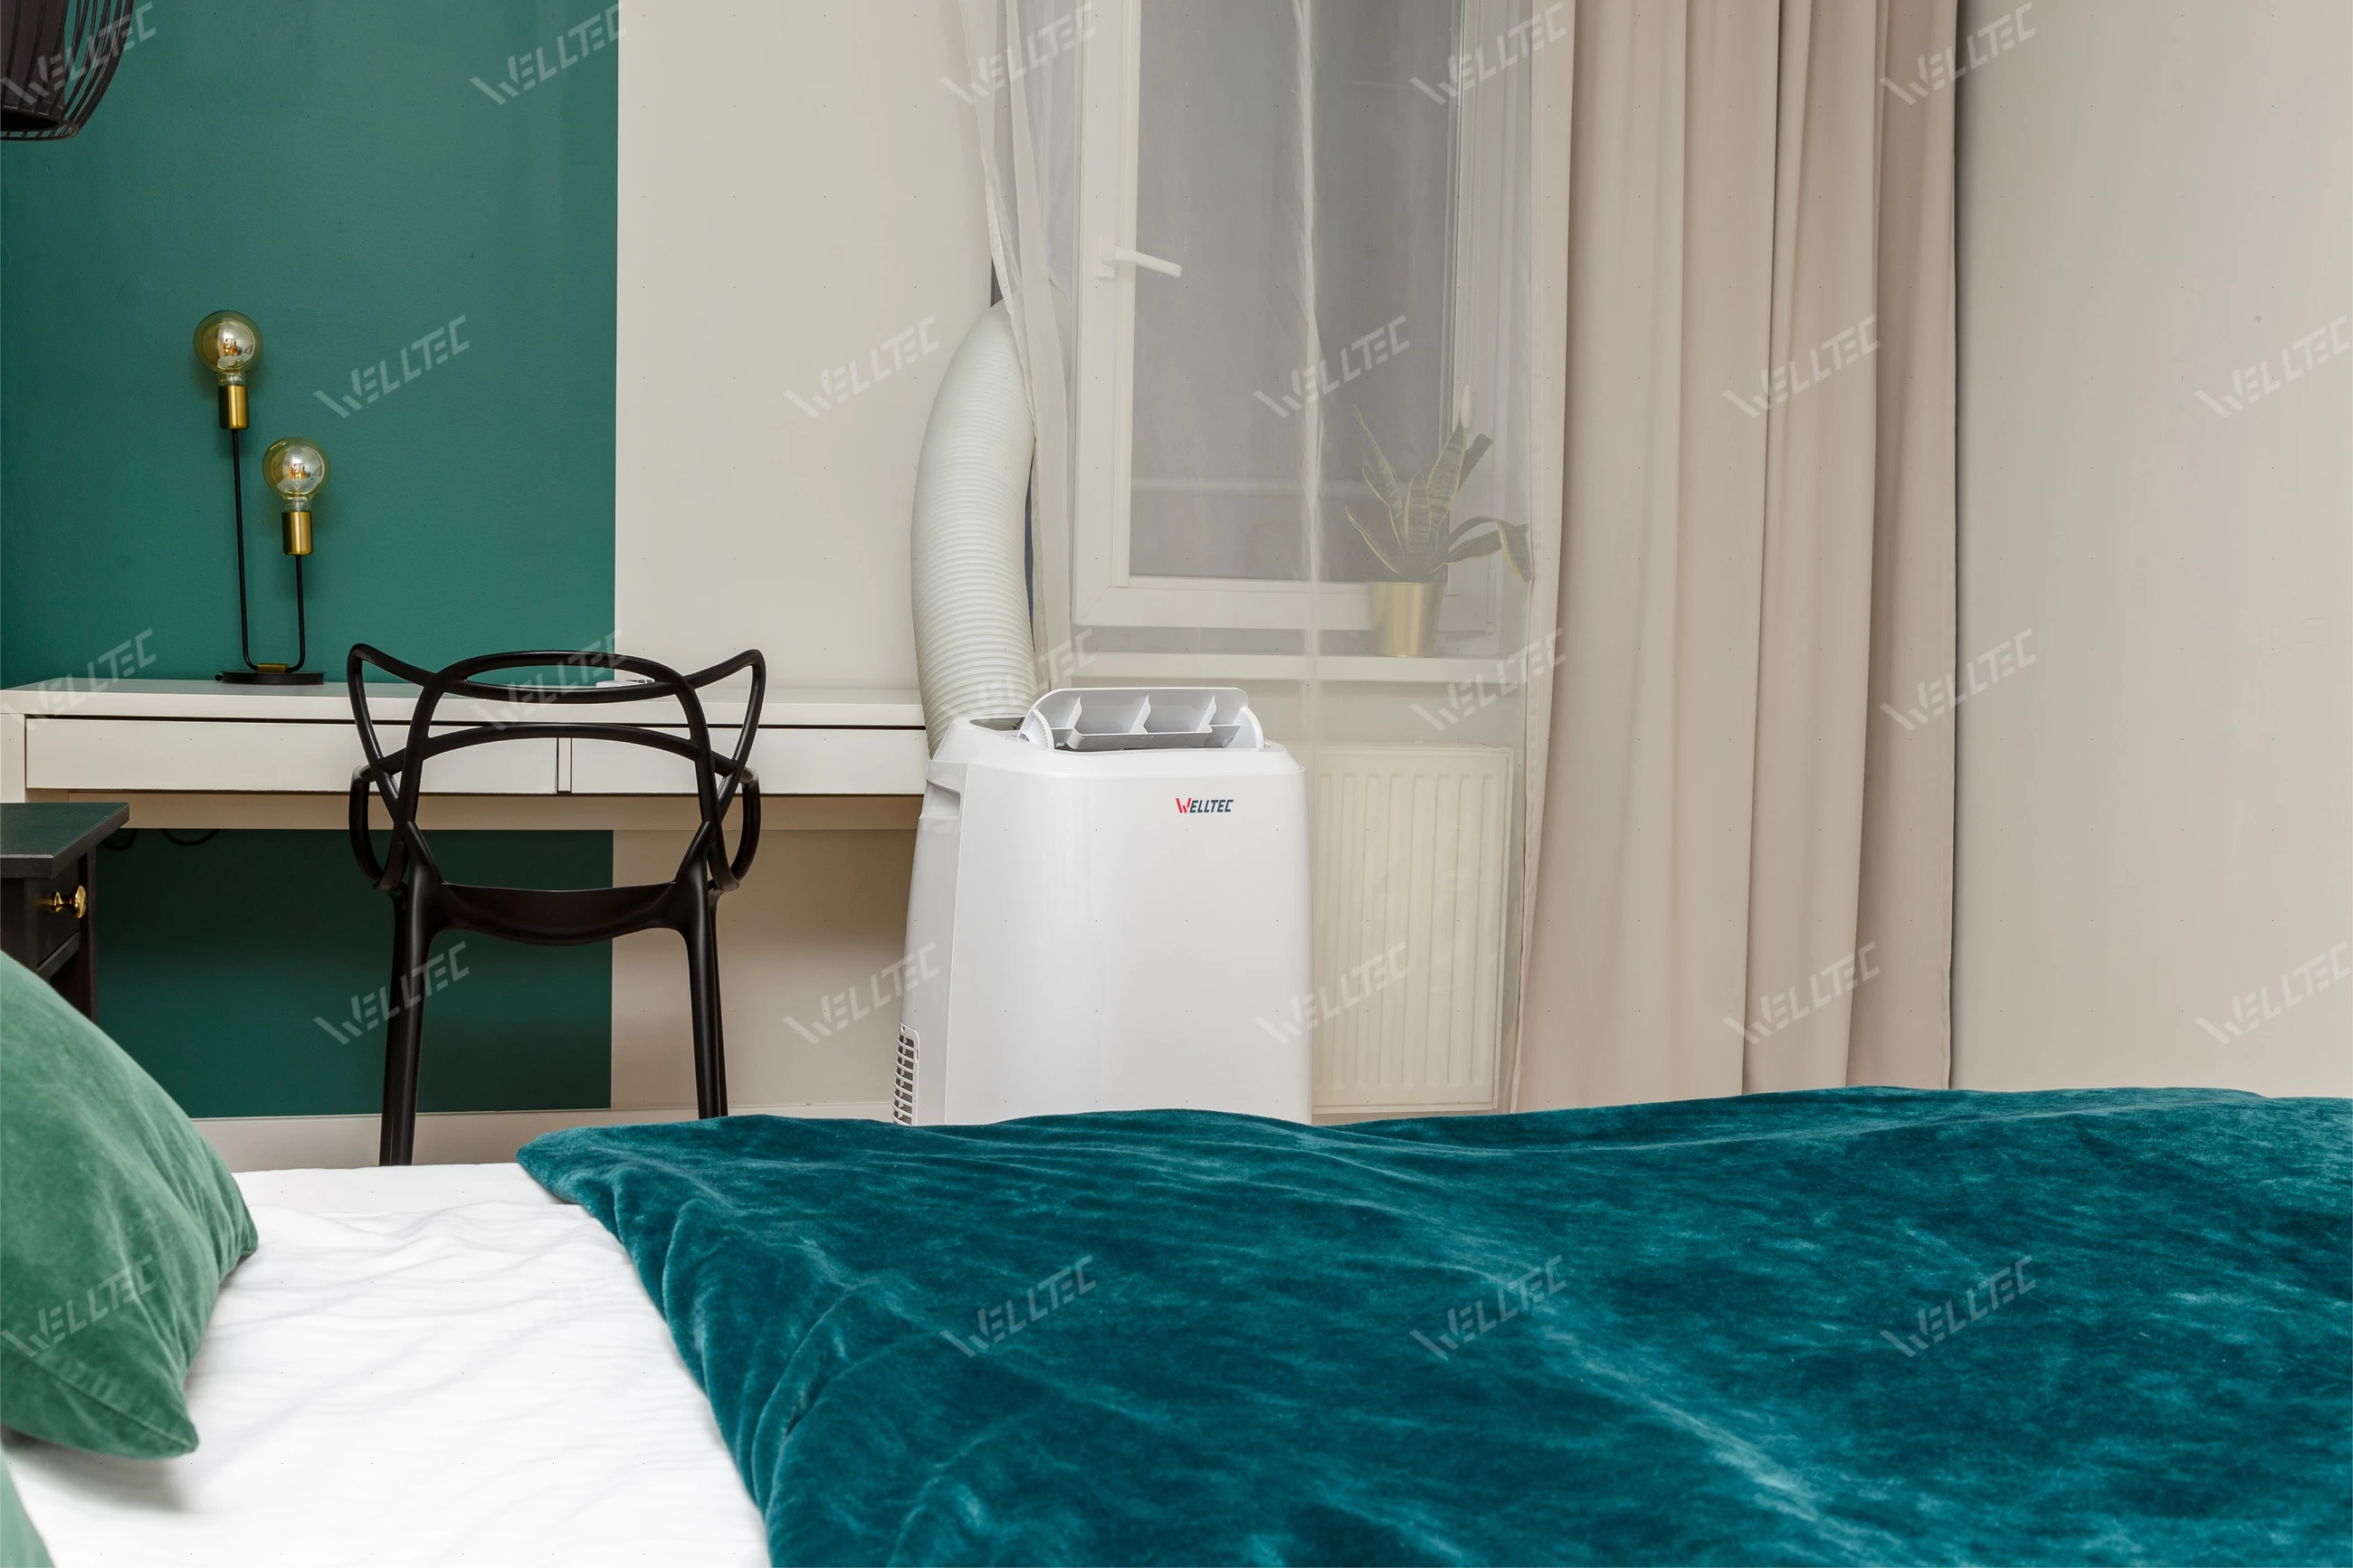 Klimatyzator przenośny Welltec ACN16 - sprawdzi się w sypialni